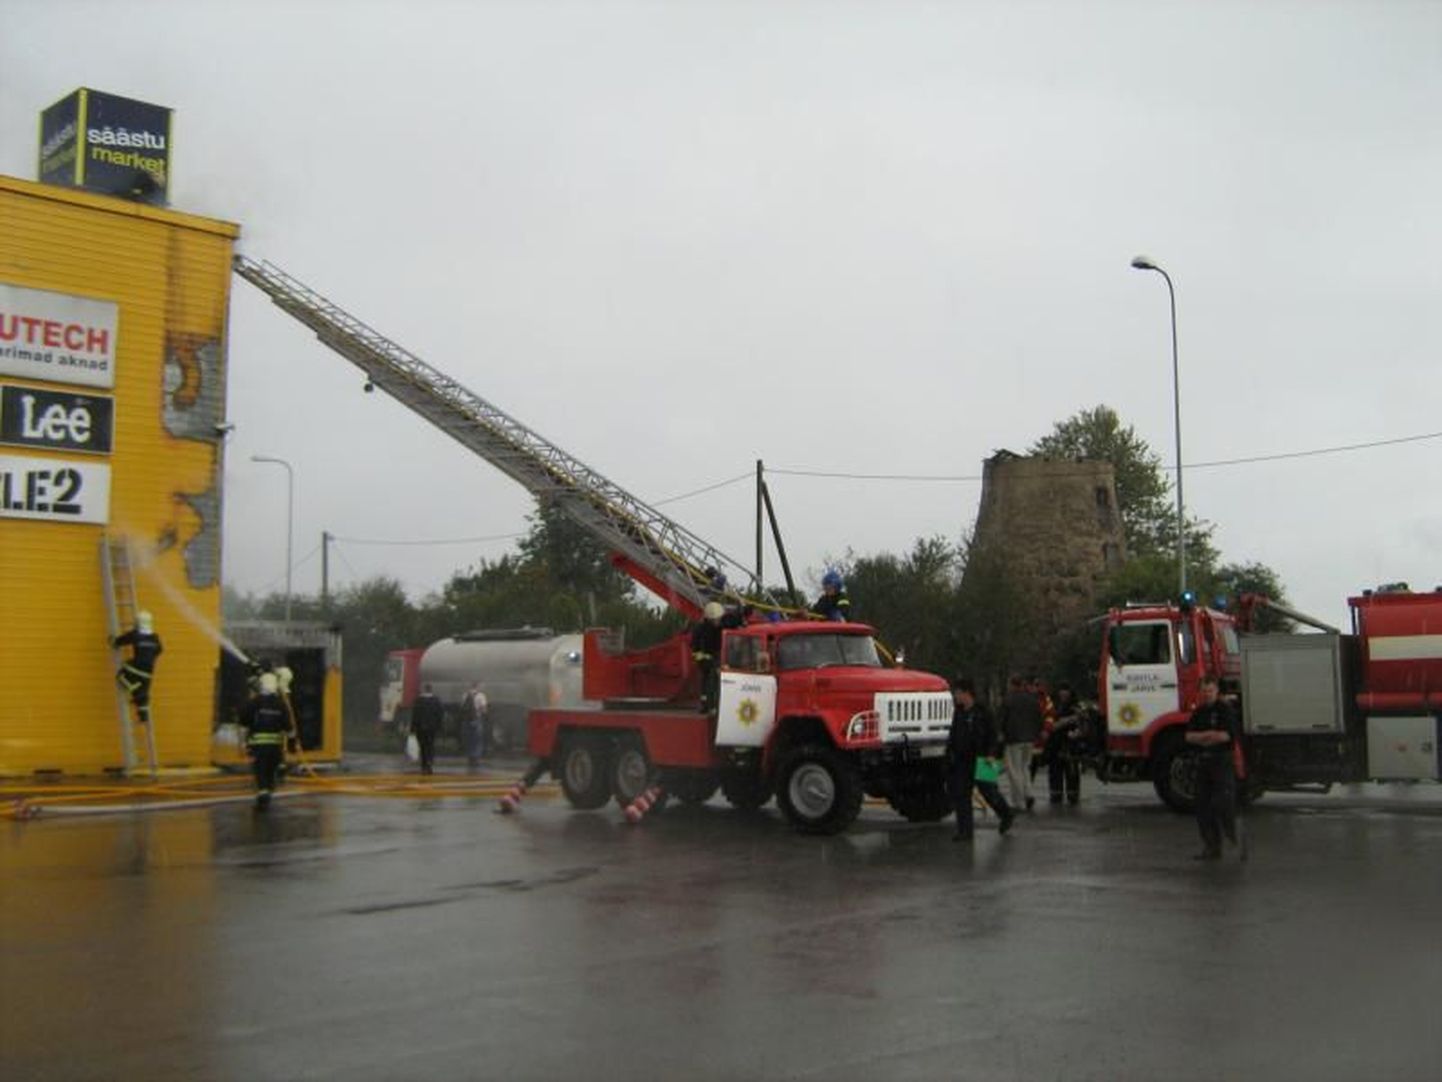 Kohtla-Järvel Järveküla teel asuva kaubanduskeskuse taaraautomaadis
puhkes täna tulekahju.